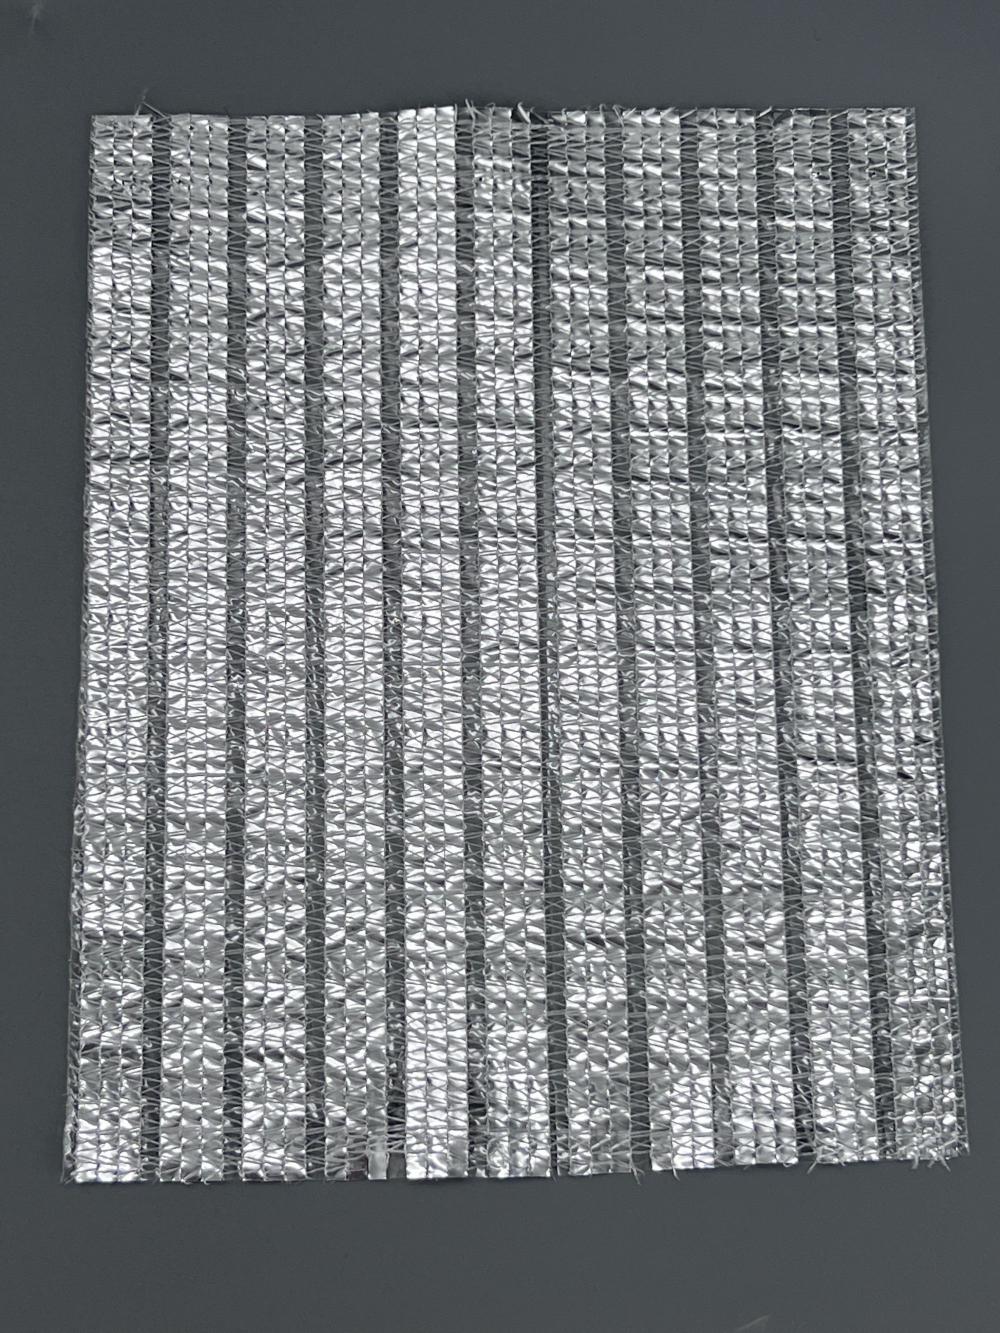 Aluminum Foil Shade Net